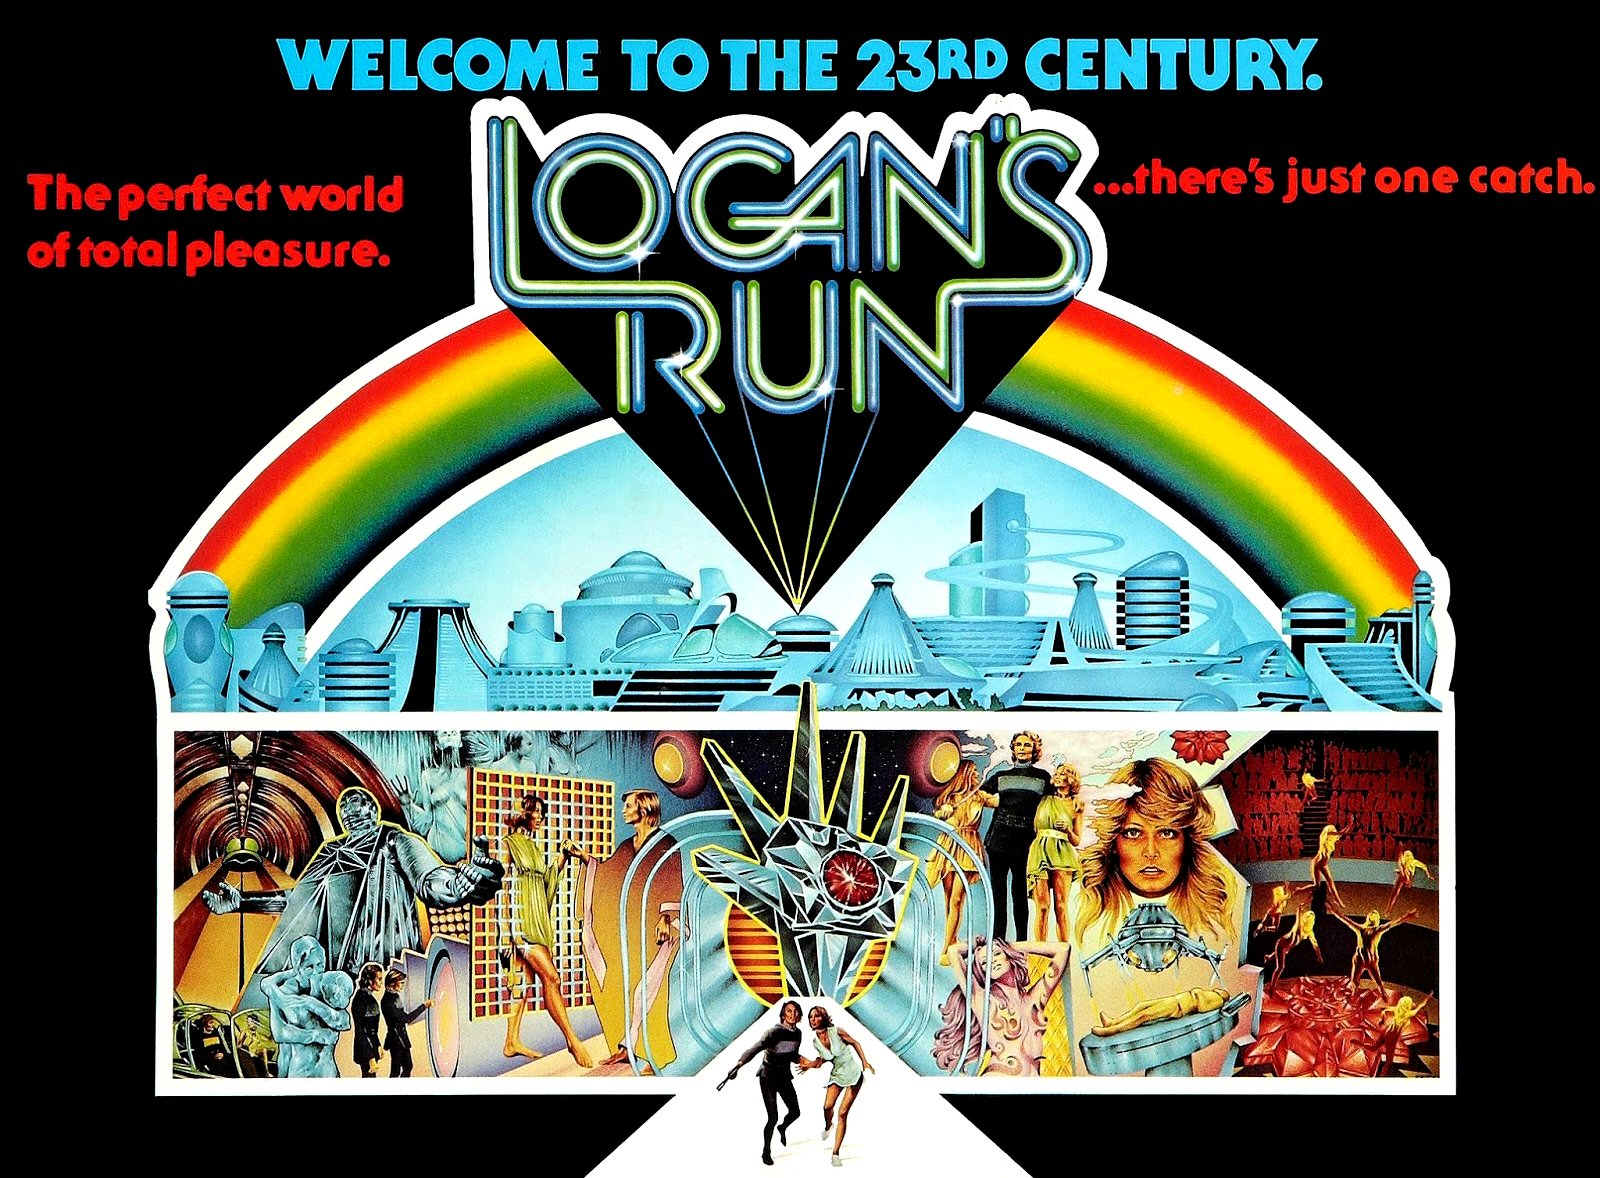 logans-run-56